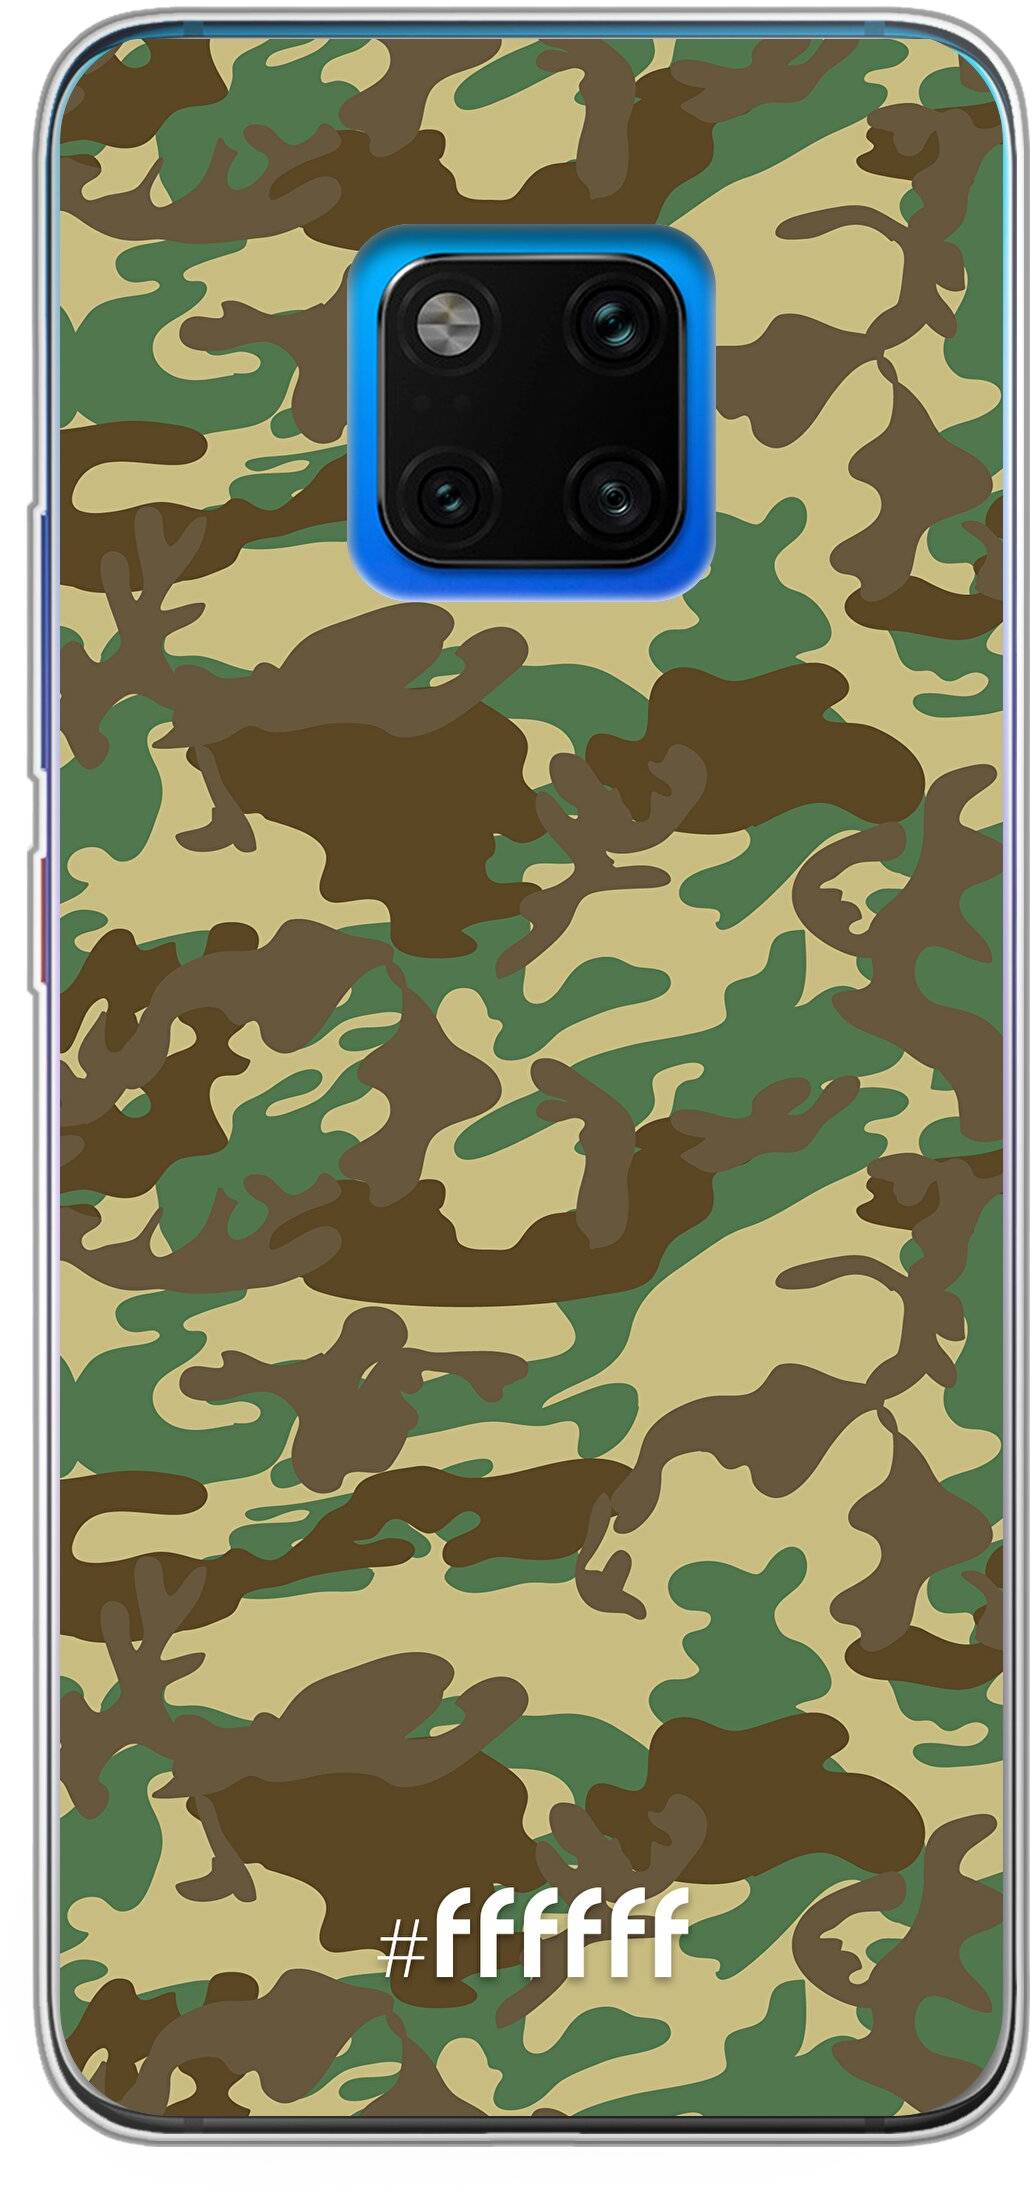 Jungle Camouflage Mate 20 Pro